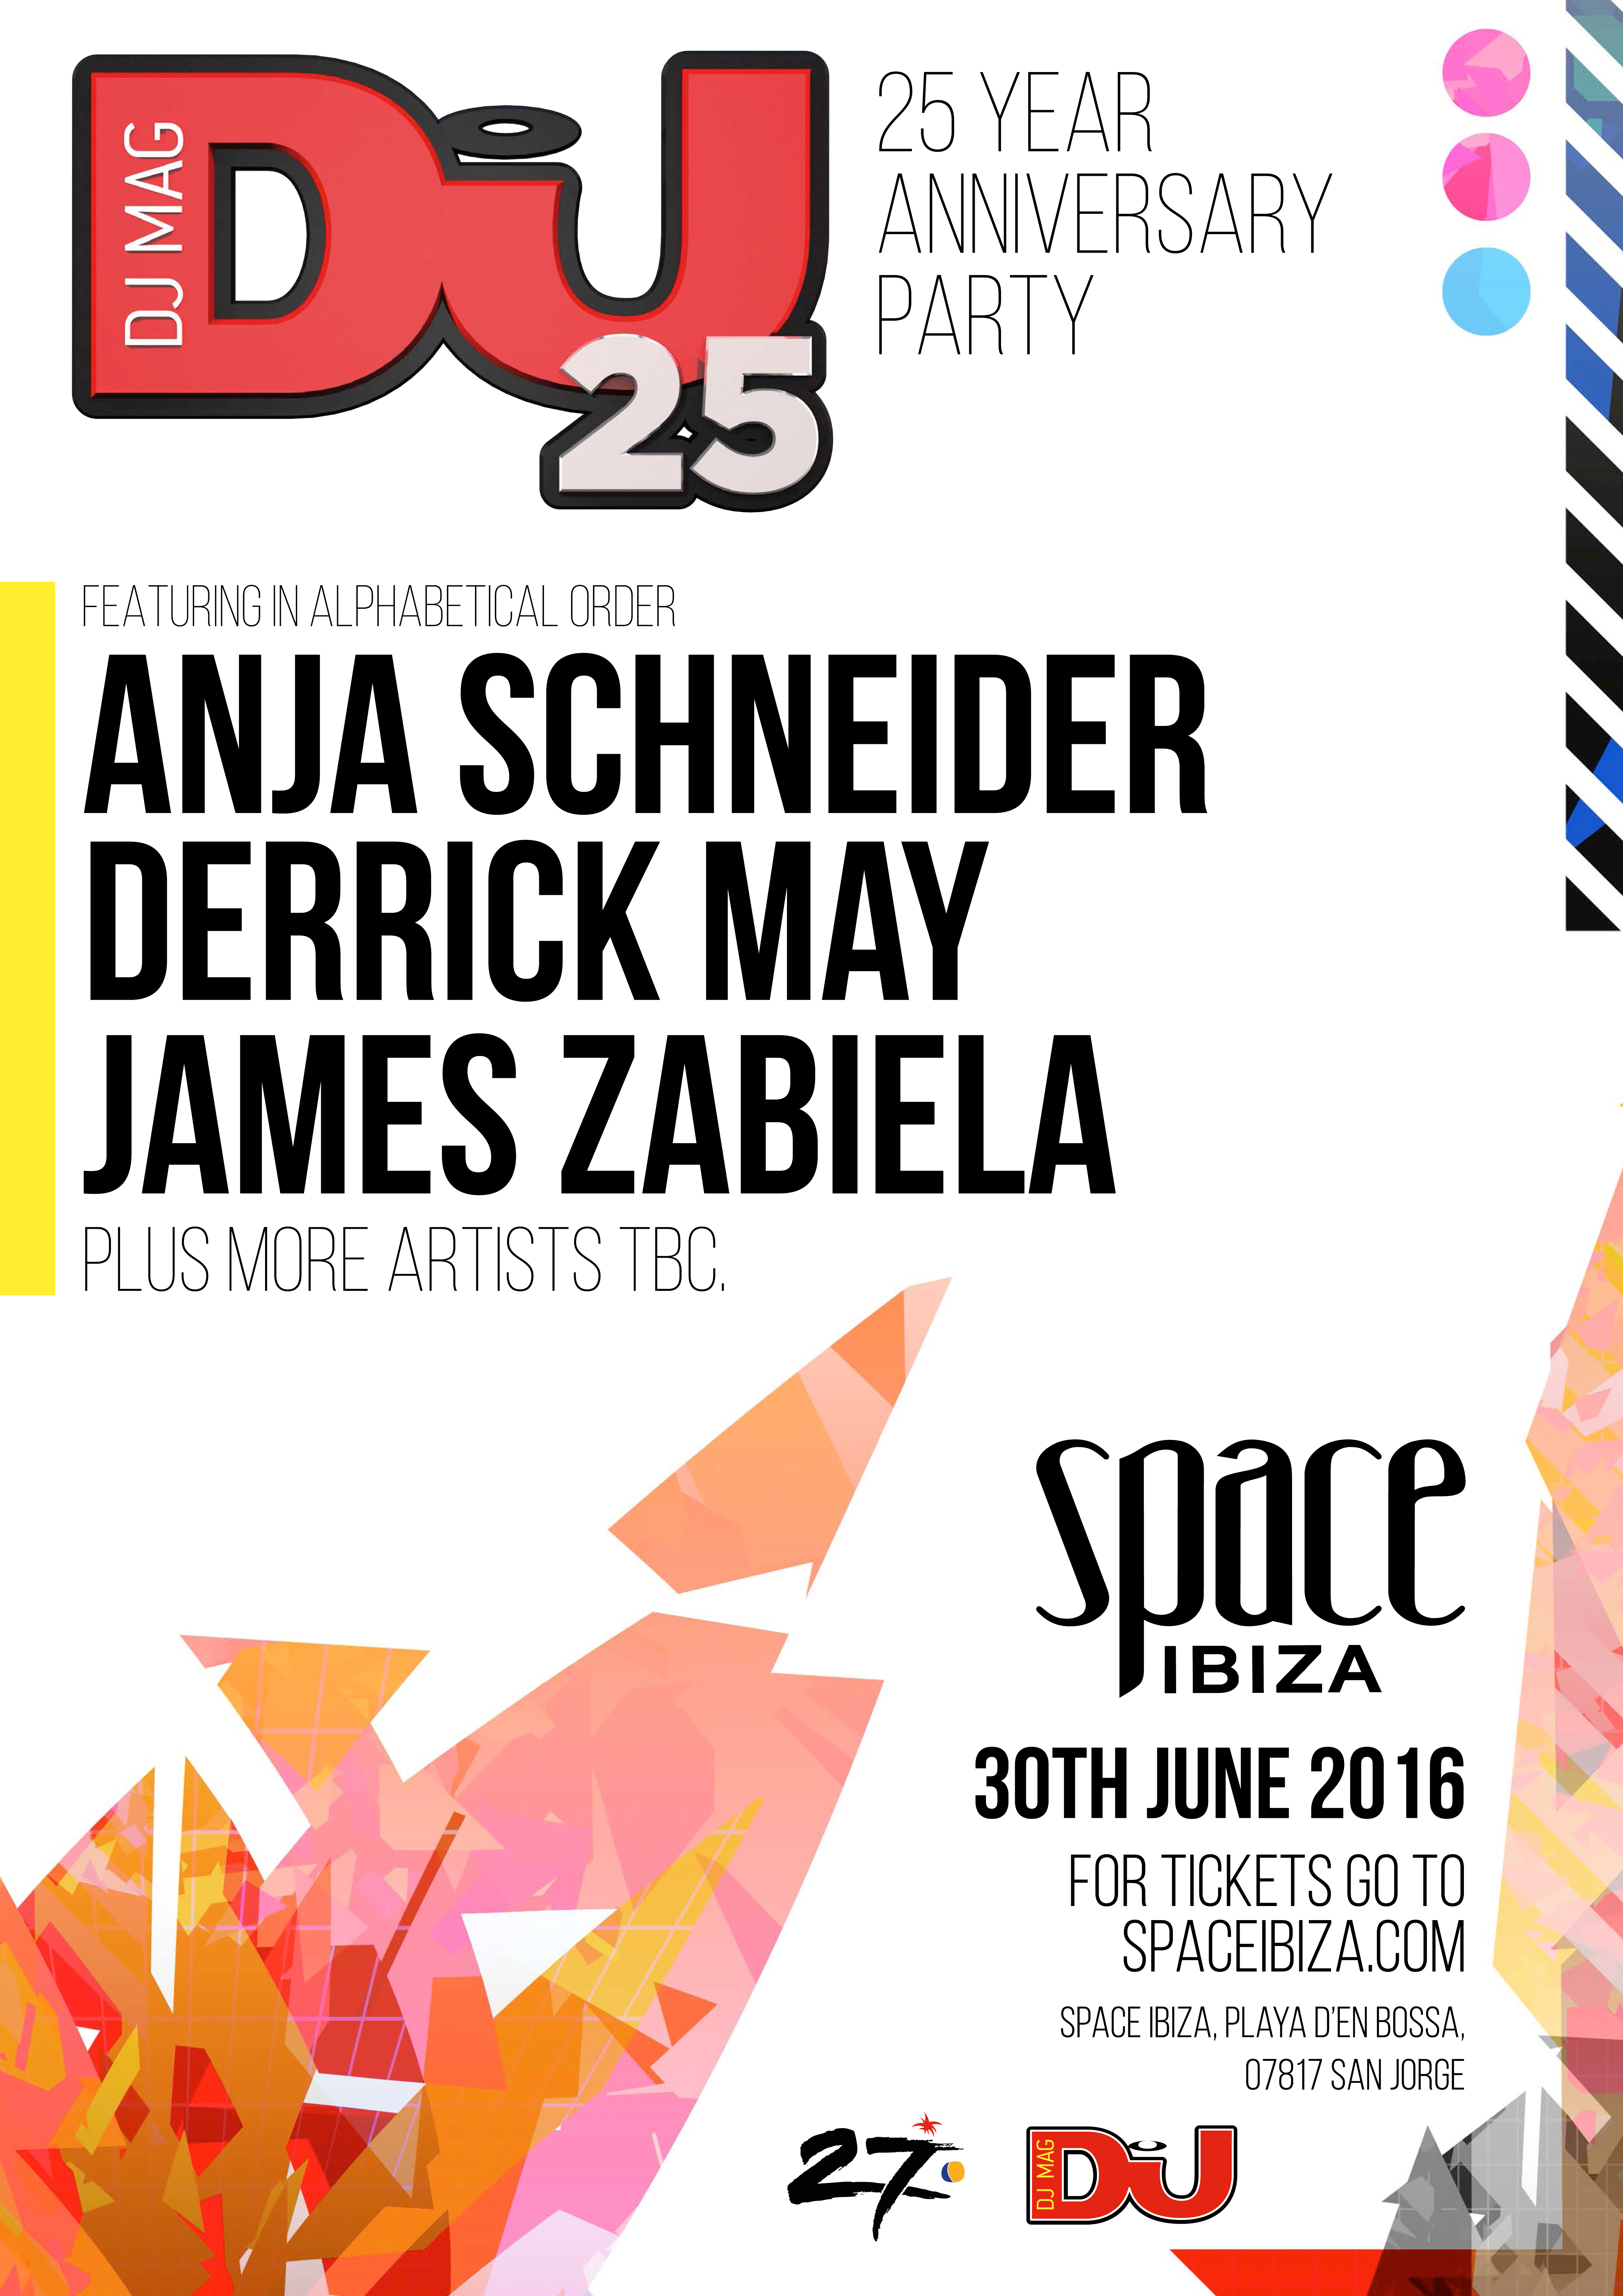 djmag_space_flyer DJ Mag celebra su 25 Aniversario en Space Ibiza